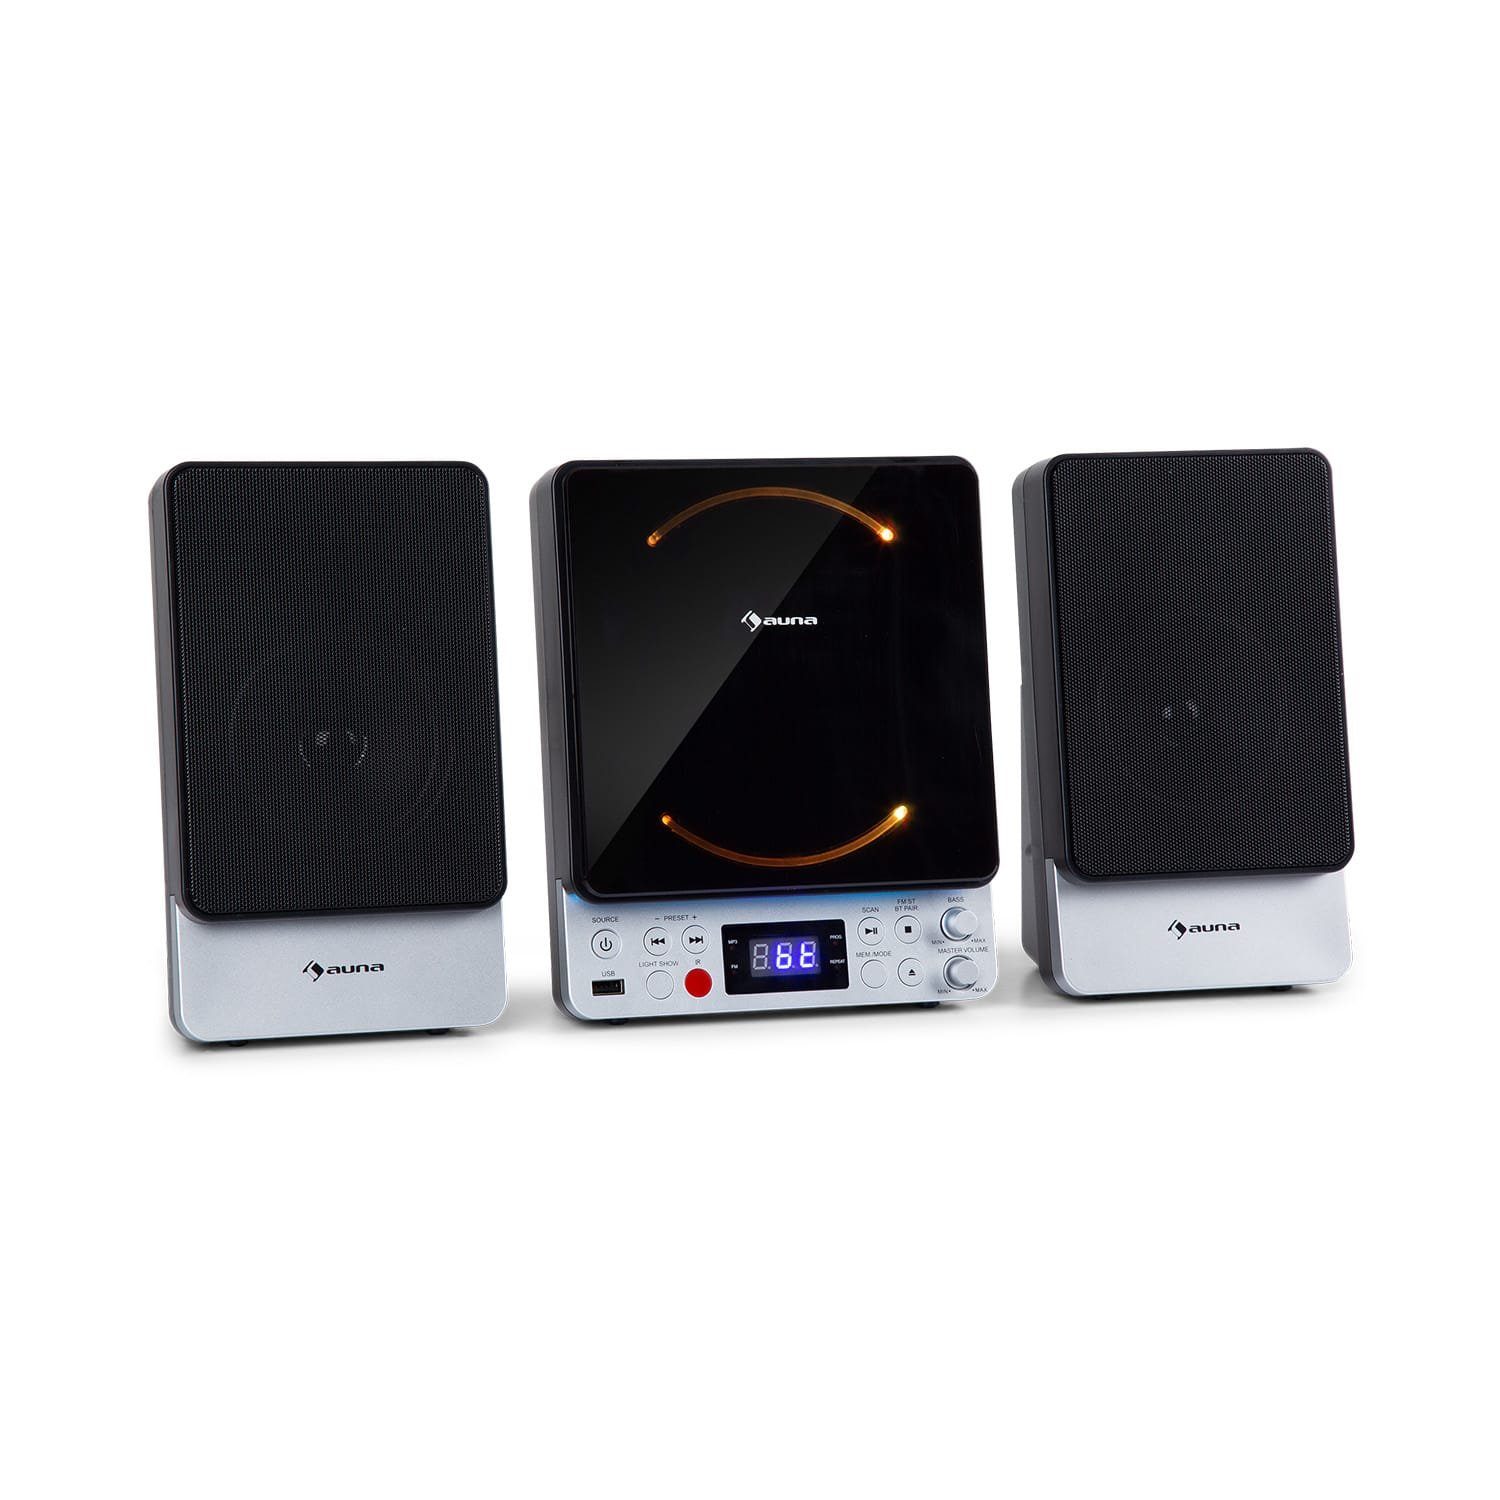 Auna »Microstar Microsystem Vertikalanlage CD-Player Bluetooth USB-Port  Fernbedienung« Stereoanlage (UKW-Radio mit 30 Senderspeicherplätzen, 4 W,  Wandmontage, front-loading CD-Player mit automatischem Öffnungsmechanismus)  online kaufen | OTTO